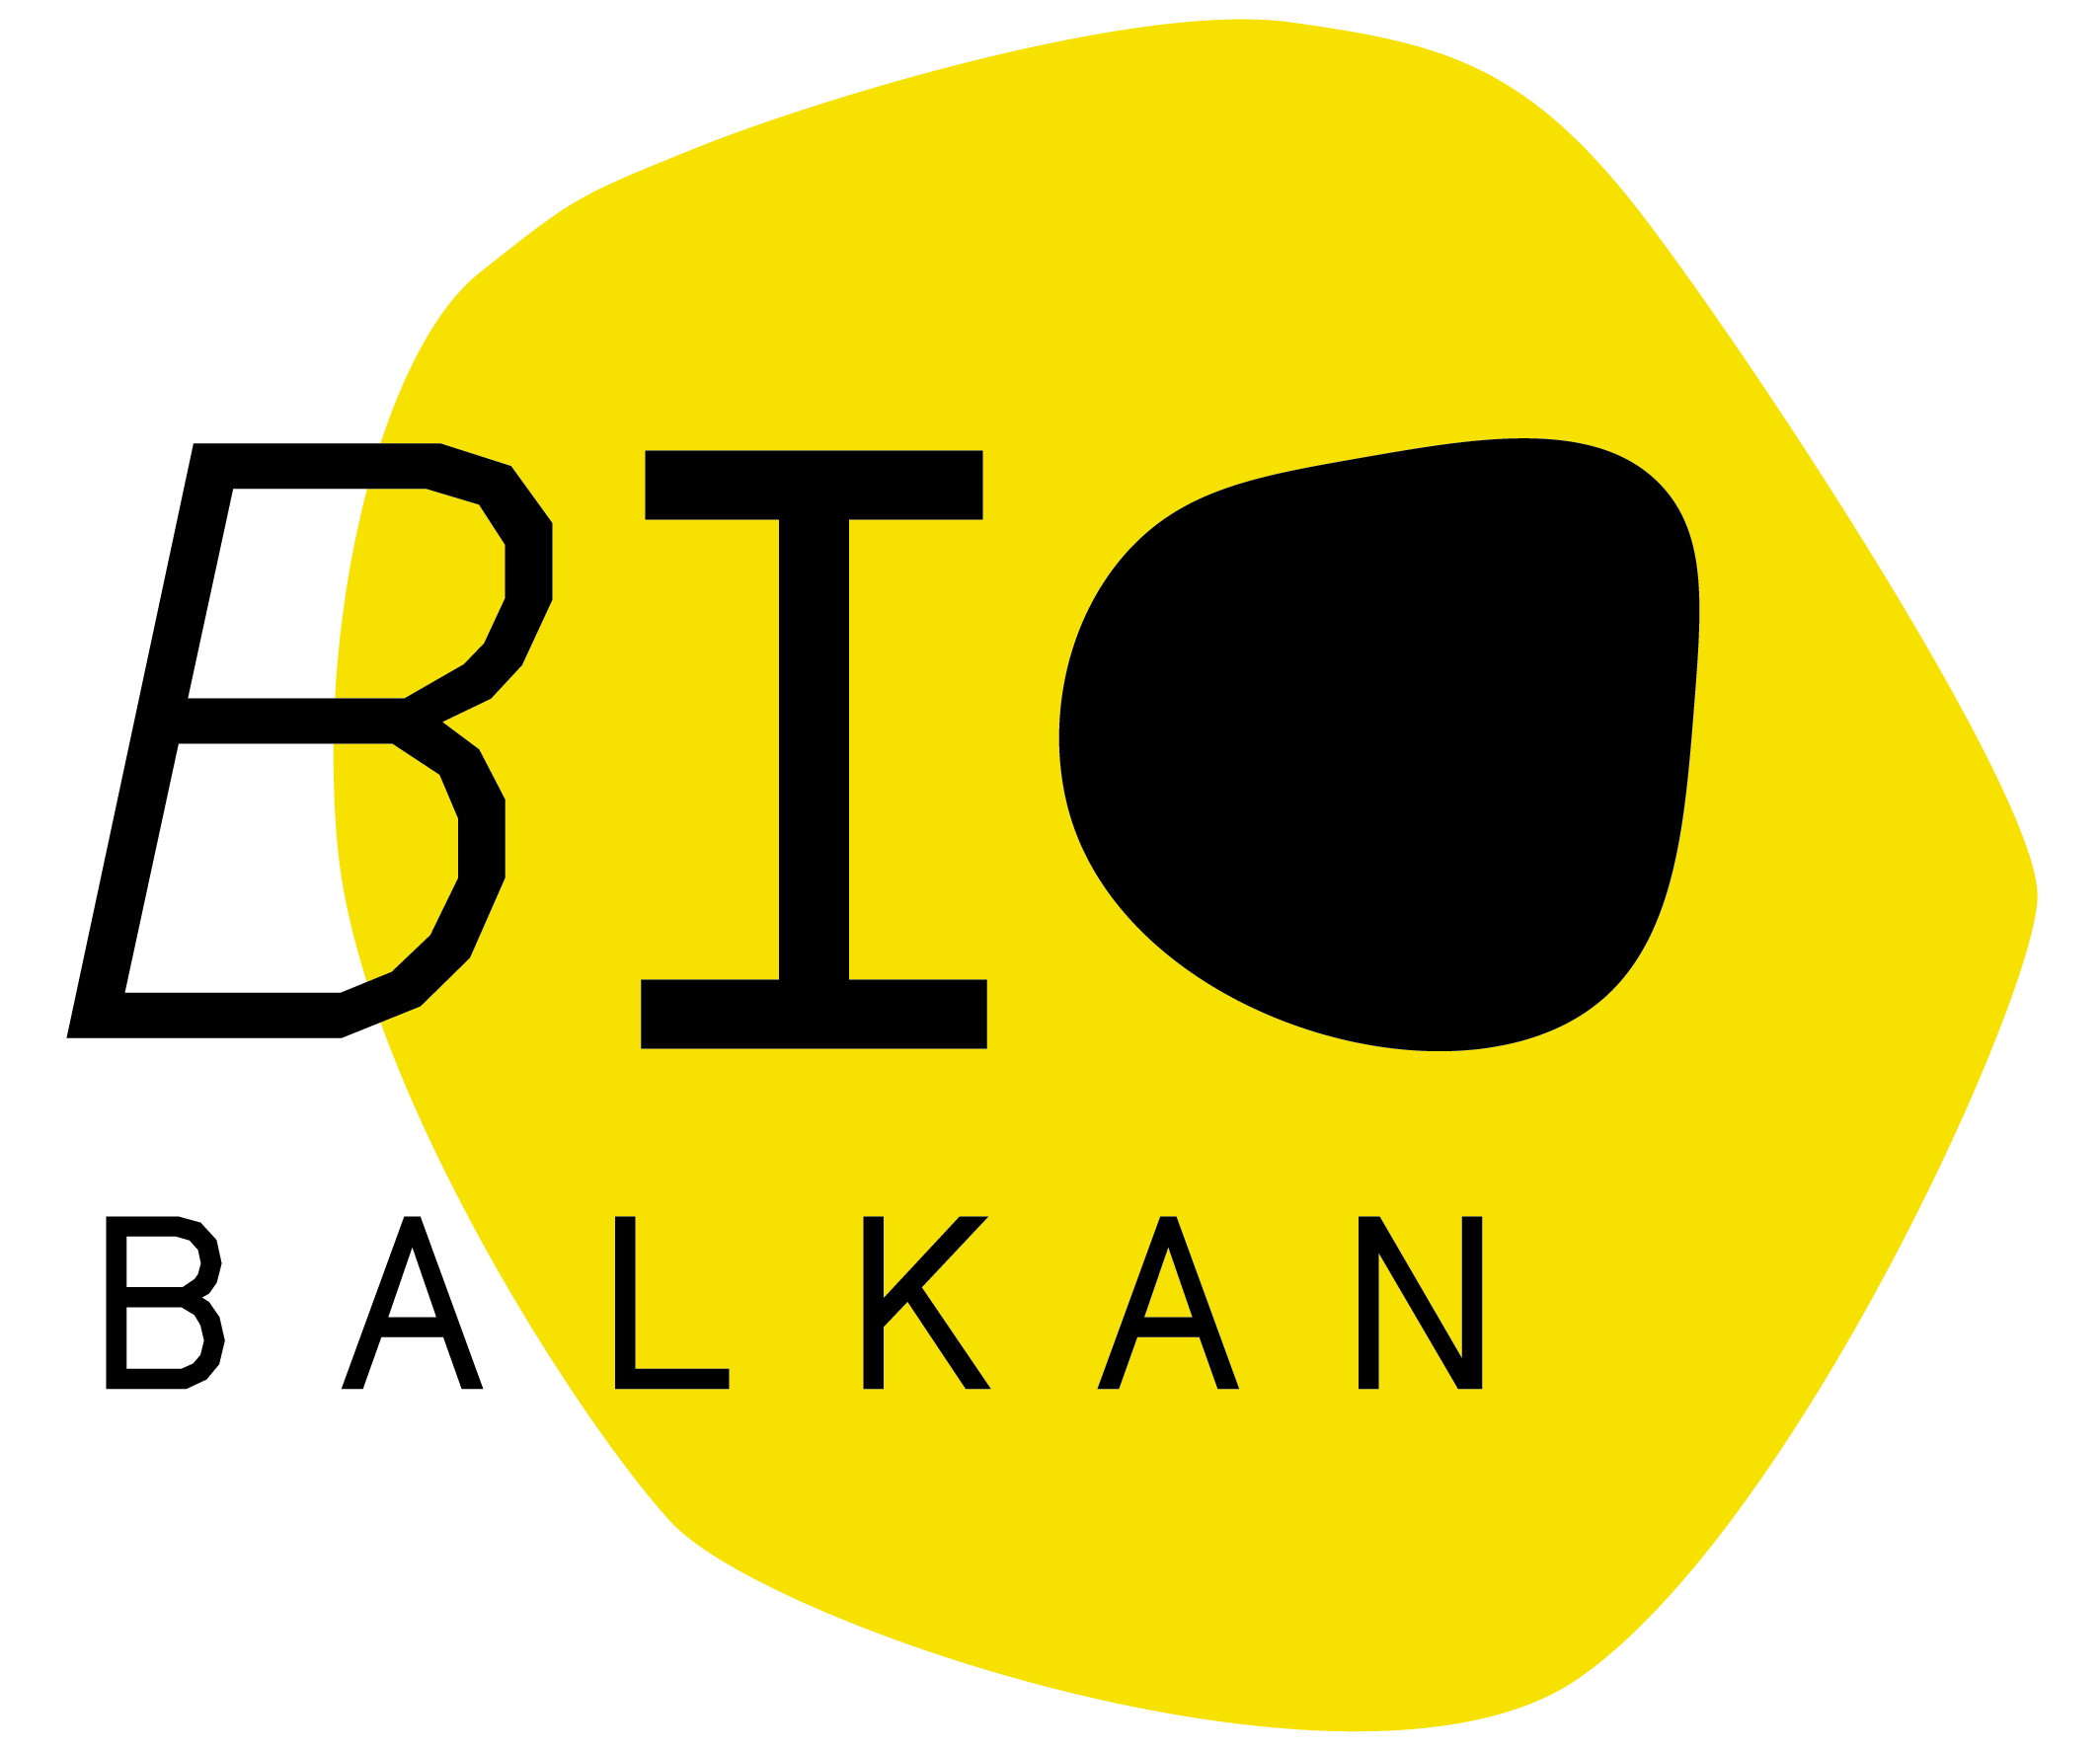 BioBalkan